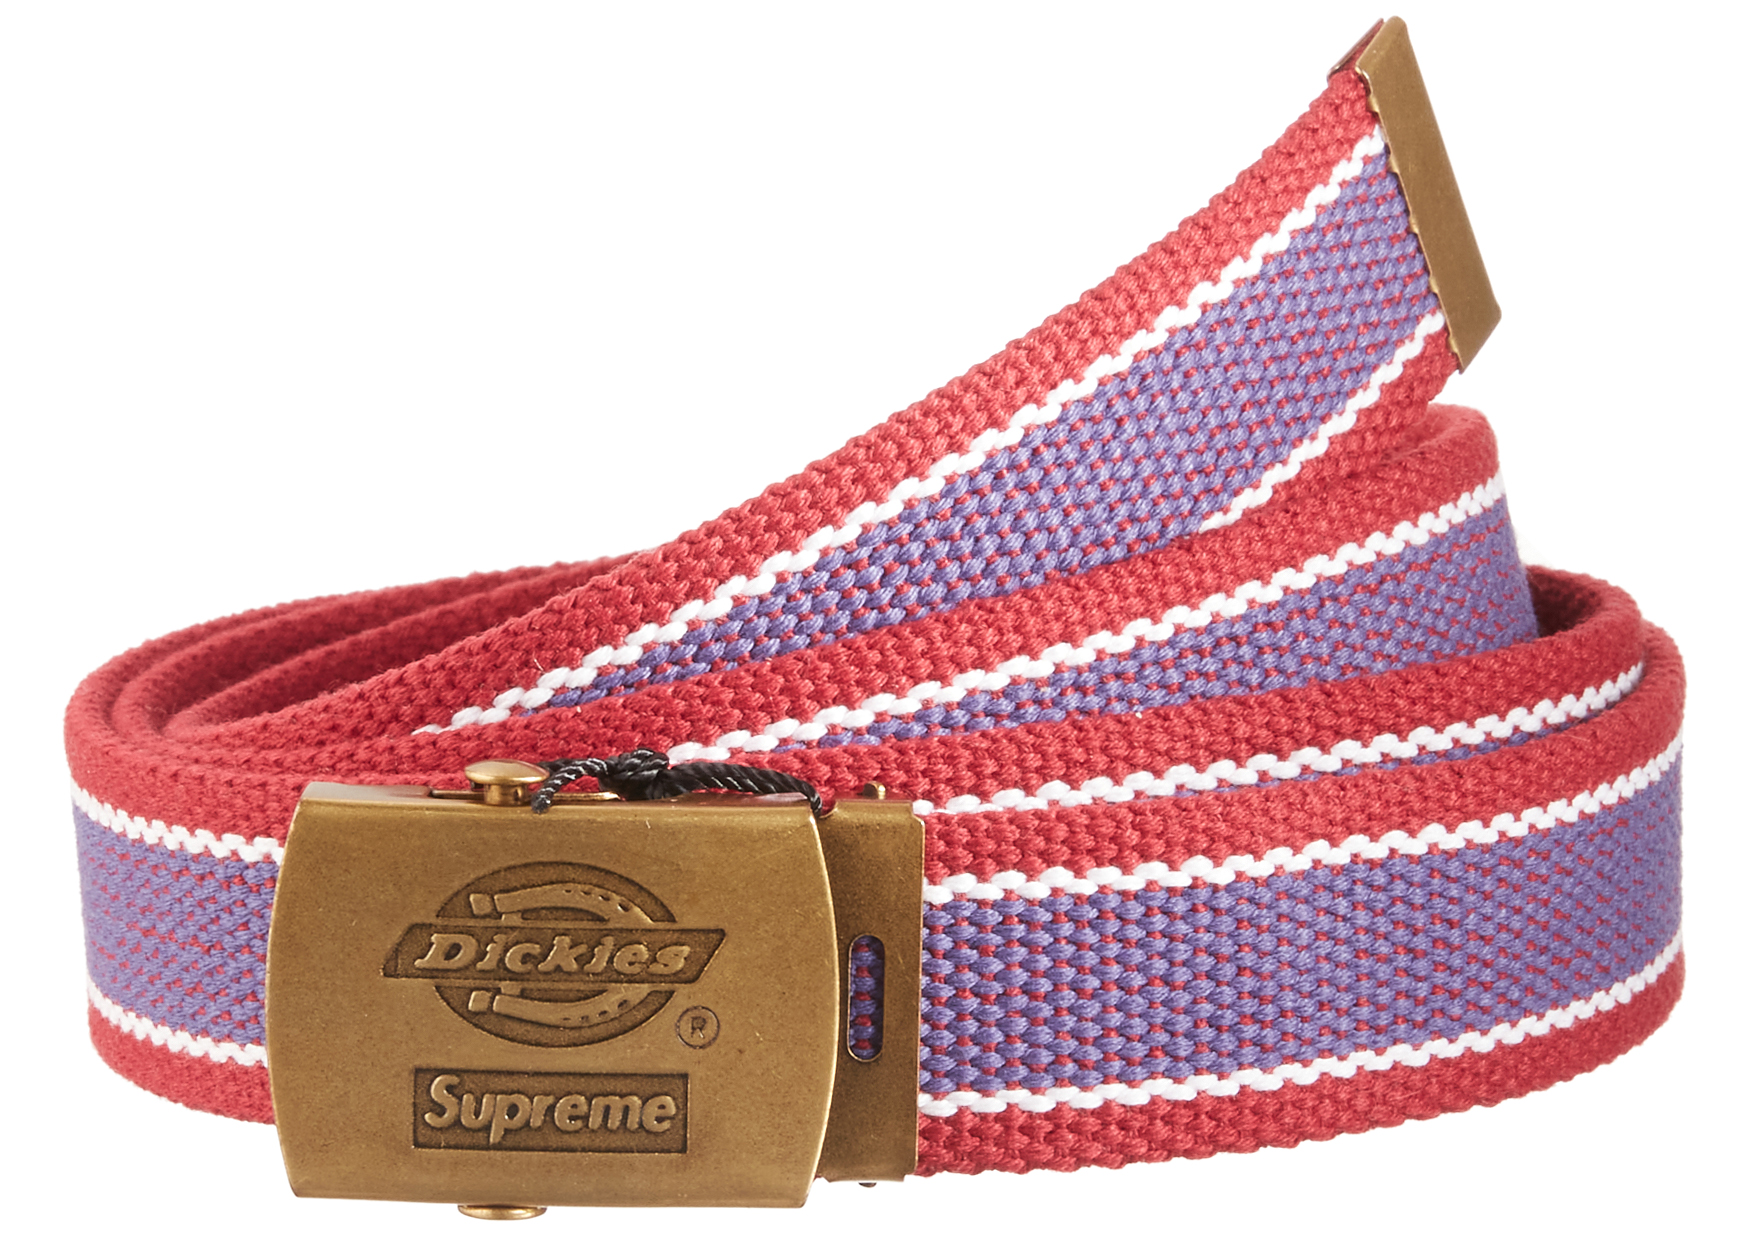 Supreme Dickies Stripe Webbing Belt